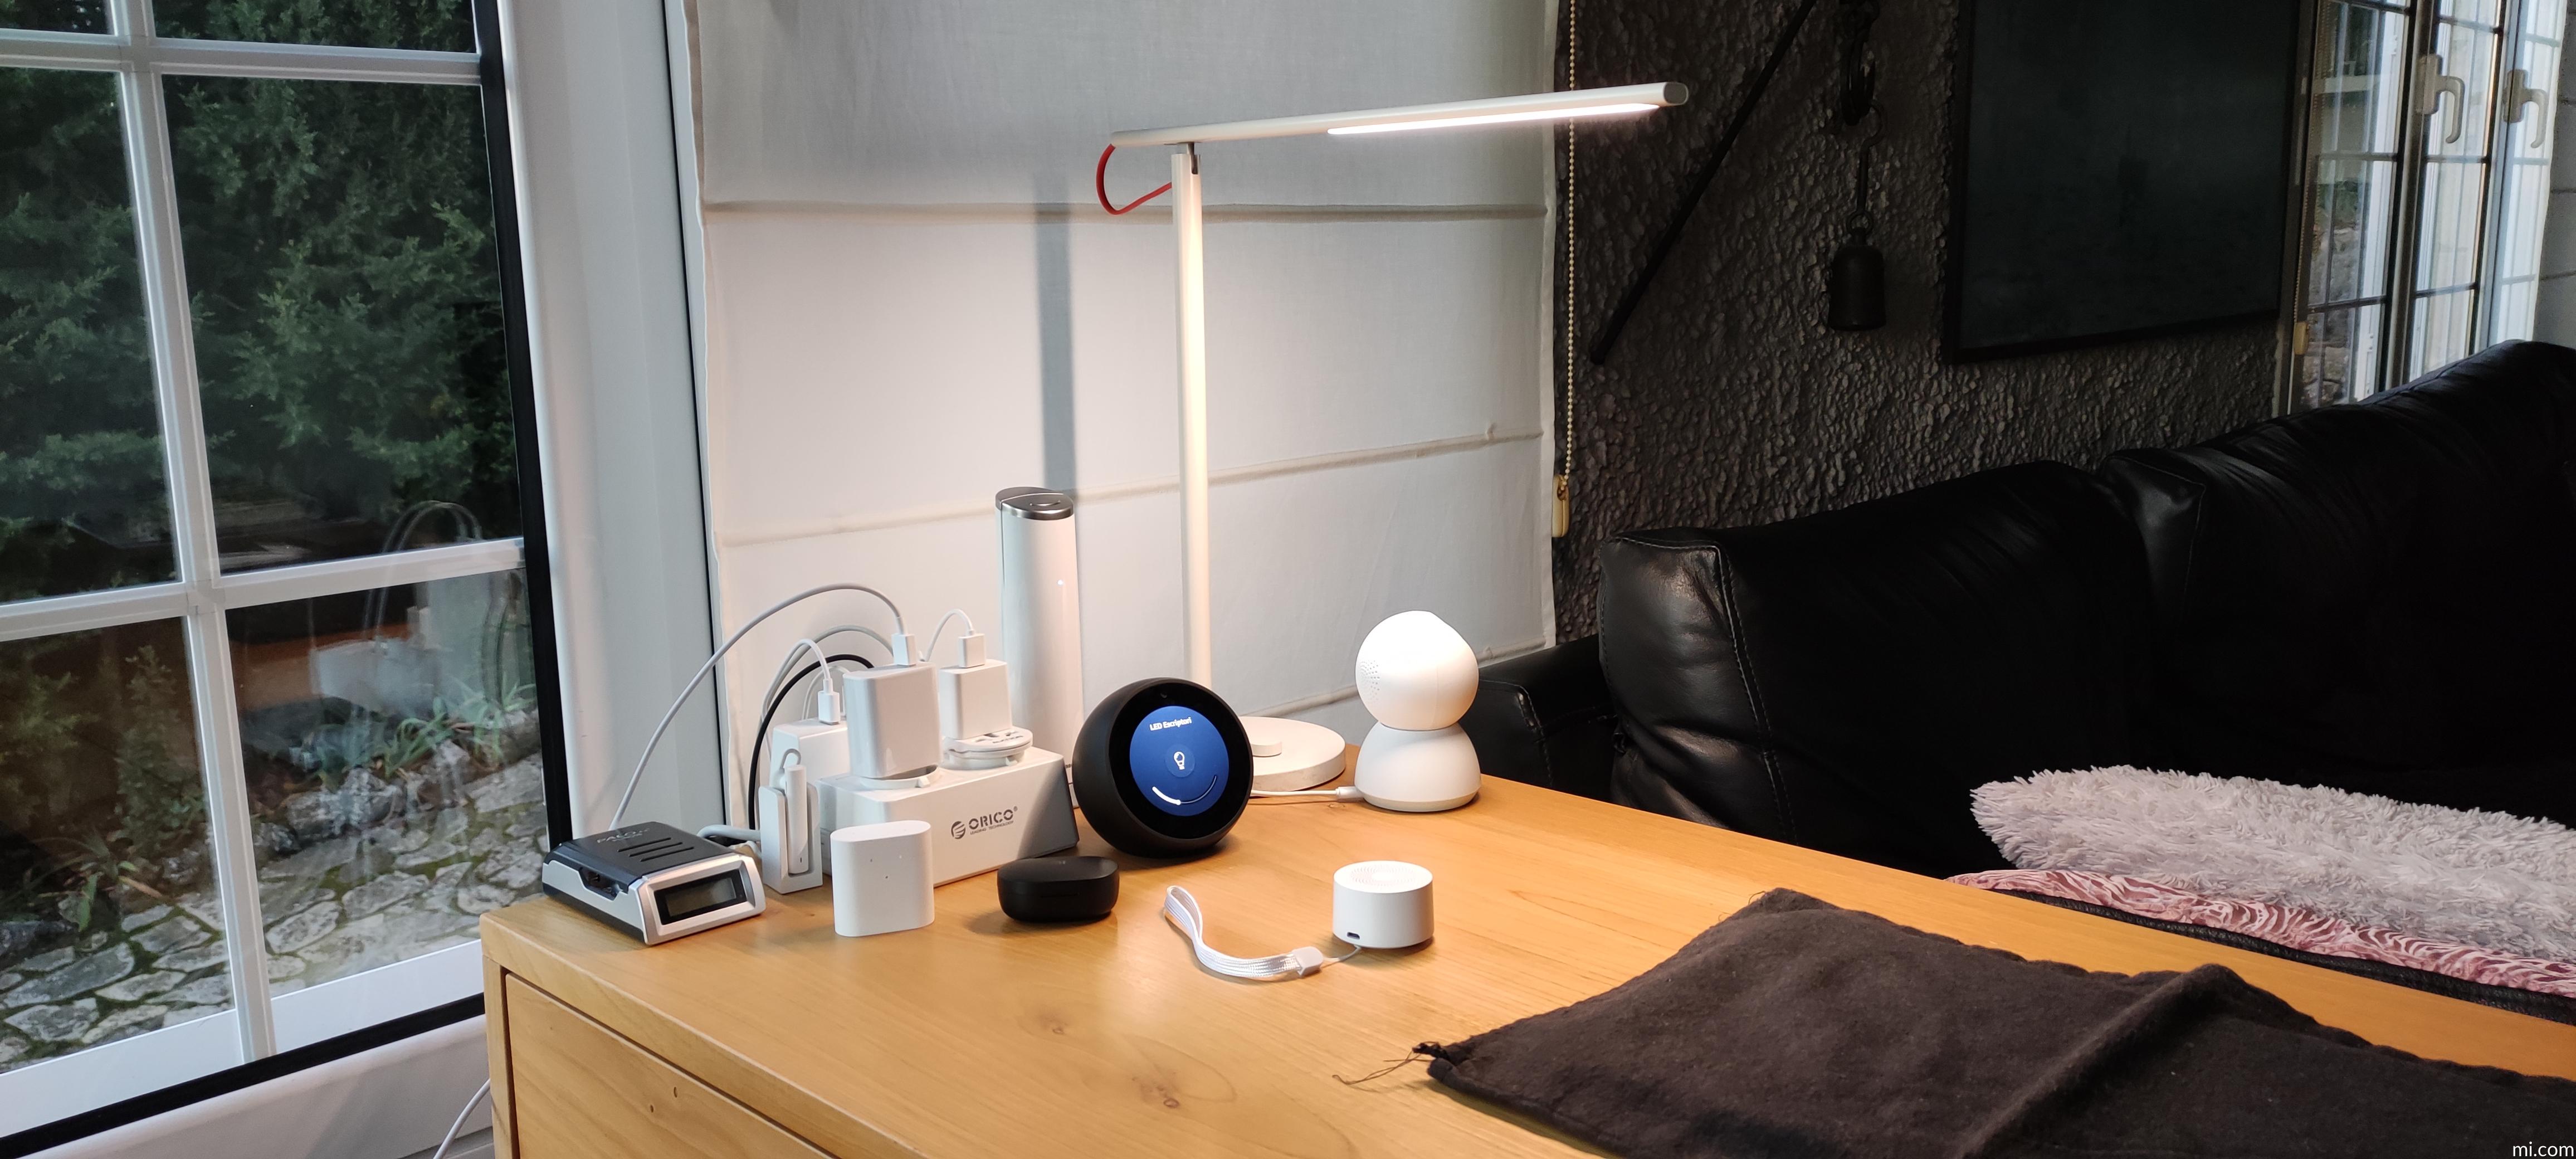 Lámpara de Escritorio XIAOMI Mi Desk 1S LED Inteligente Compatible con iOS  y Android, oferta LOi.